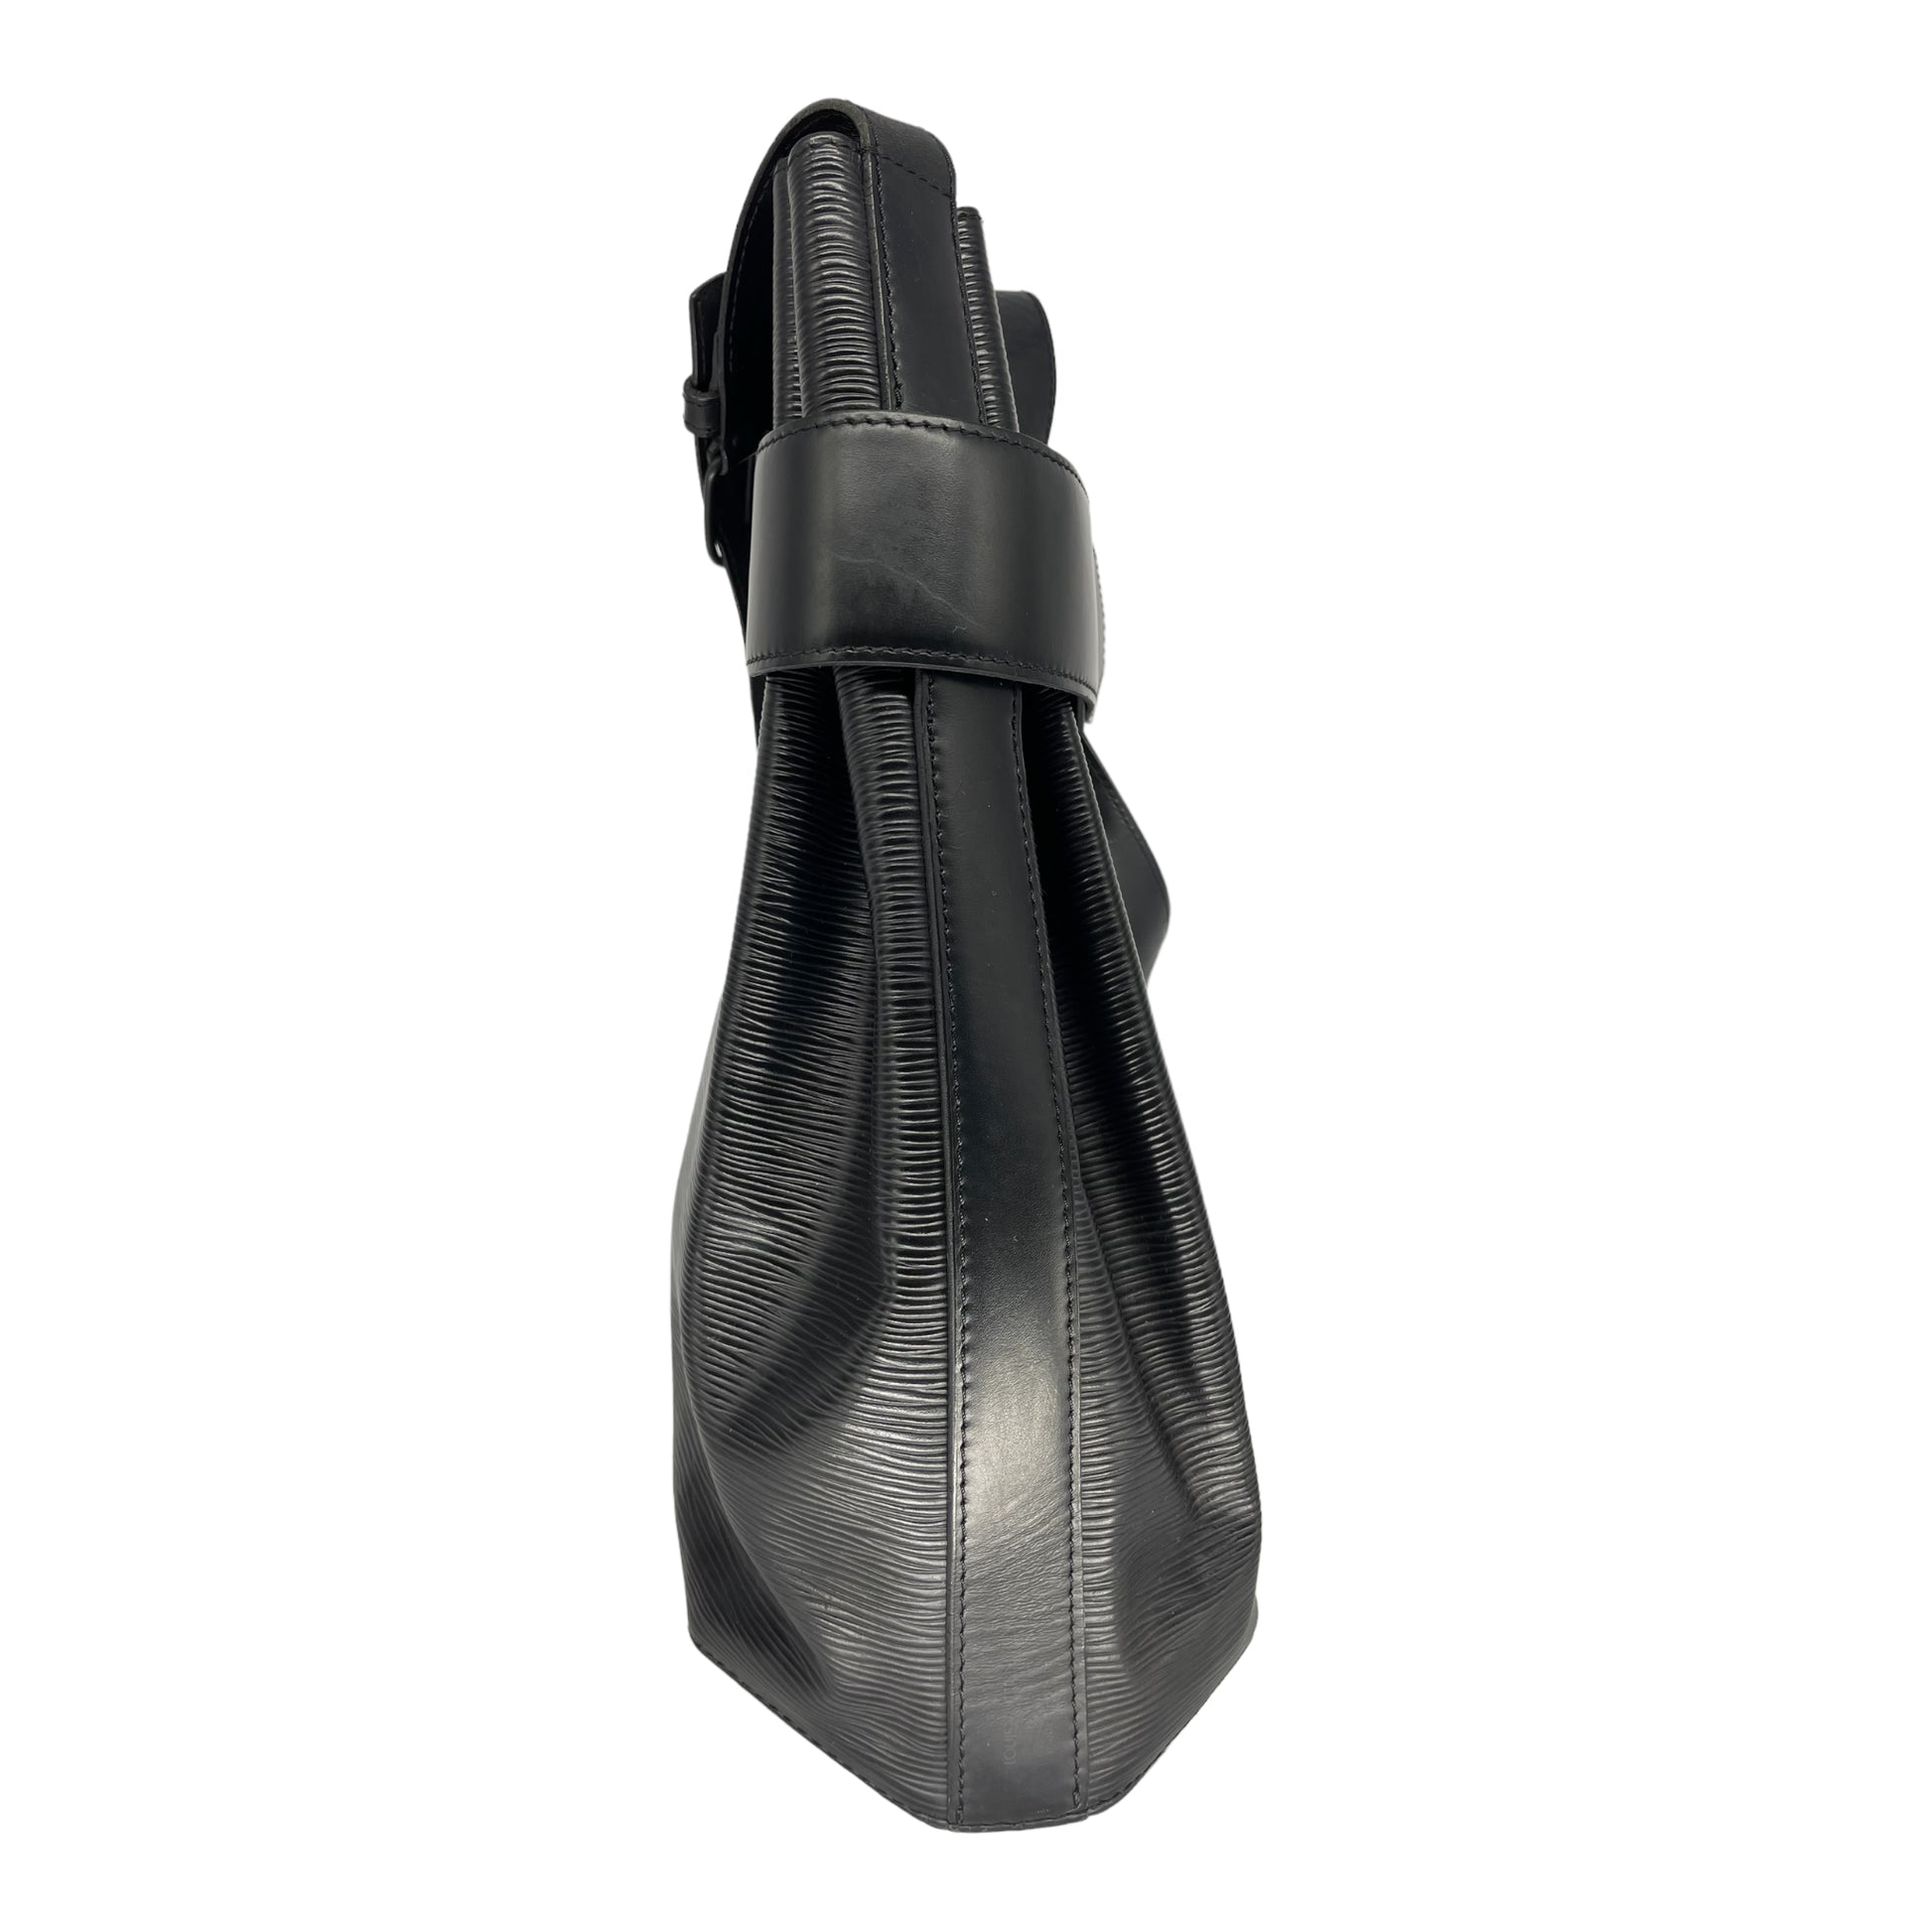 Louis Vuitton Sac D'Epaule PM Epi Leather Shoulder Bag on SALE